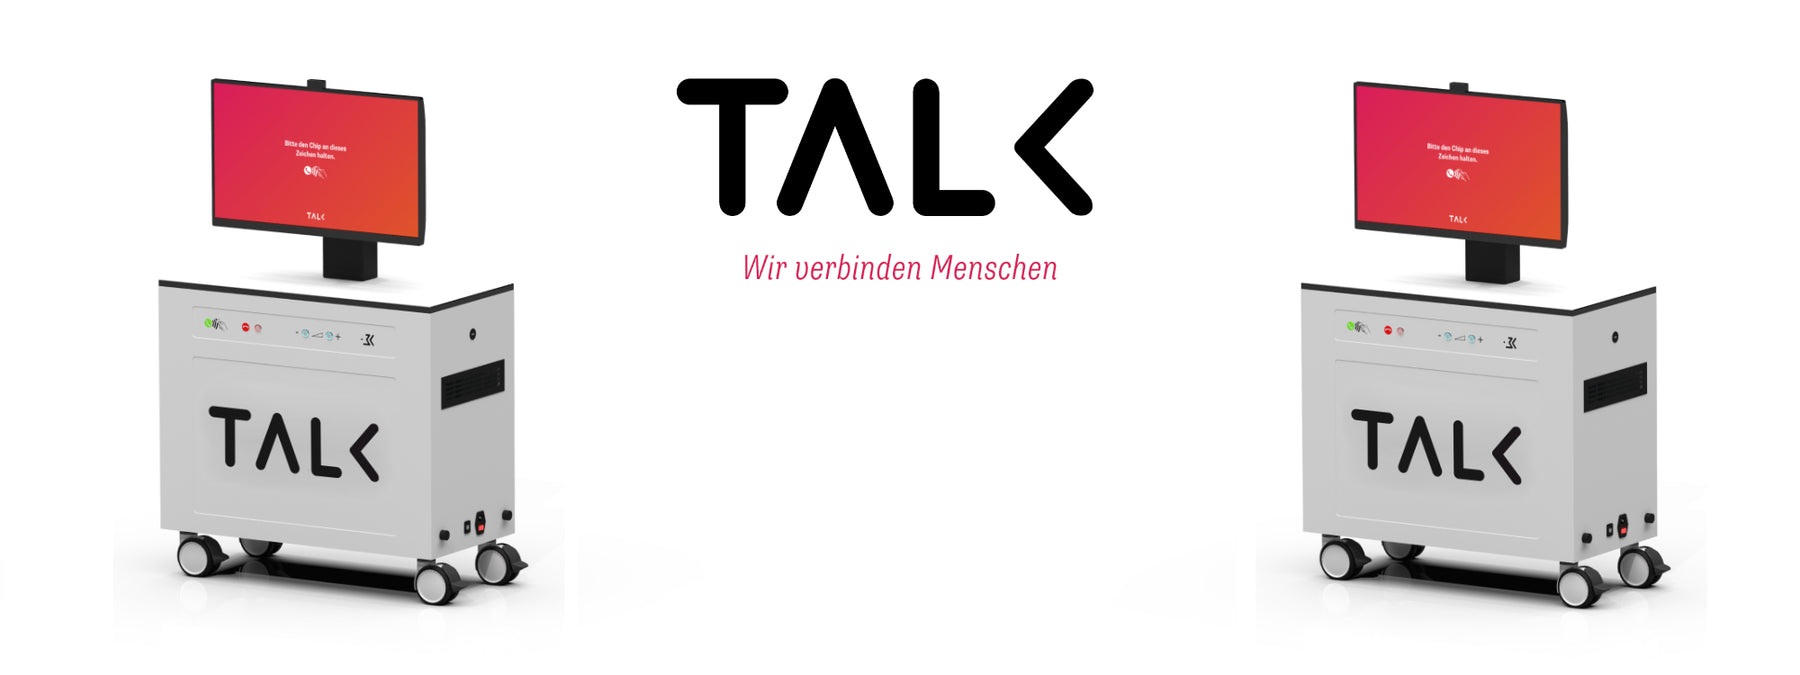 TALK - Das Kommunikationsmobil